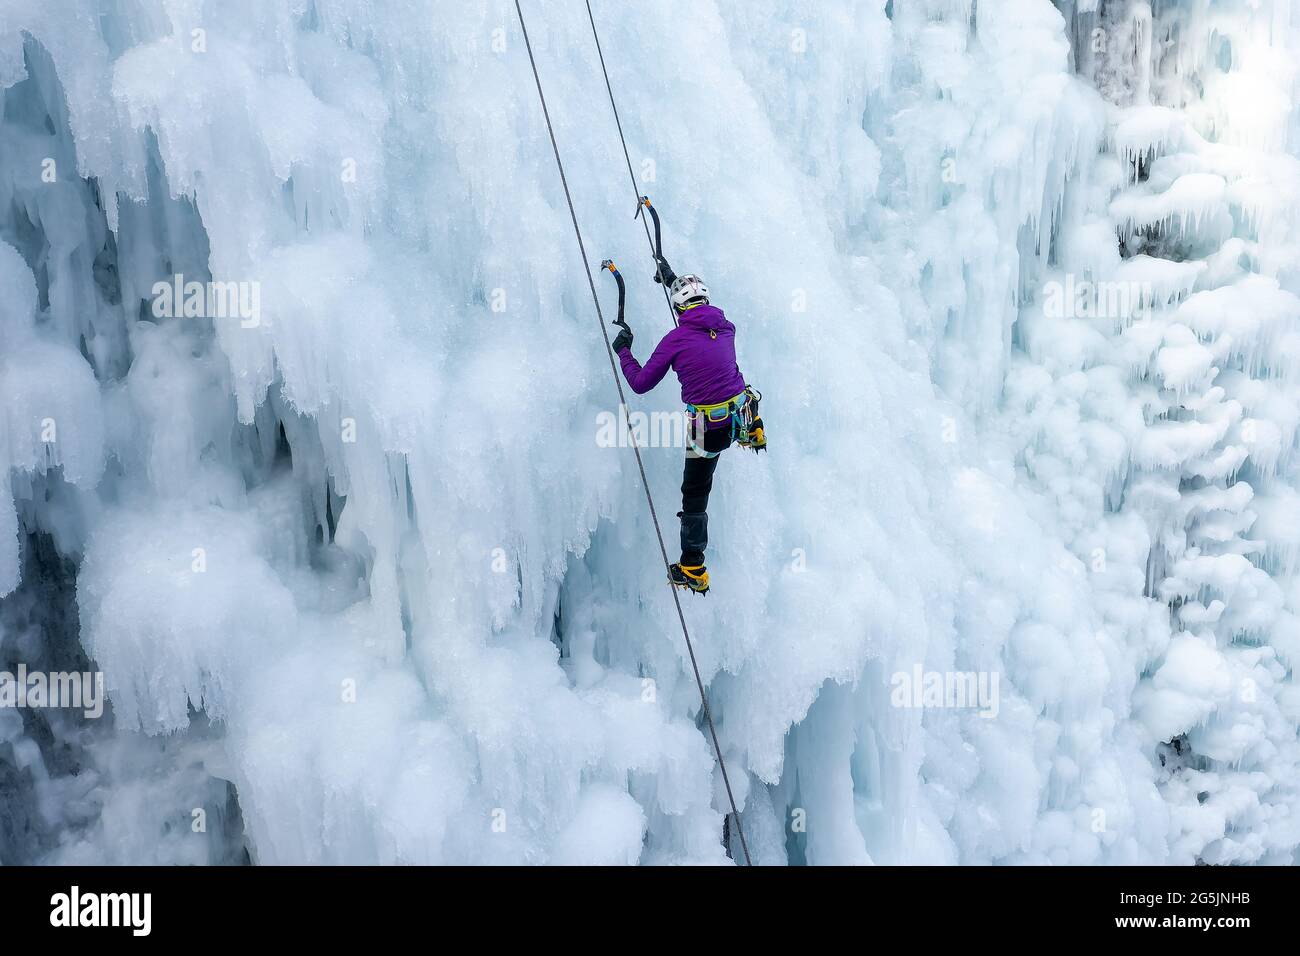 Eiskletterin klettert die Seite eines vereisten Hanges mit Unebenheiten, Graten und Eiszapfen hinauf Stockfoto